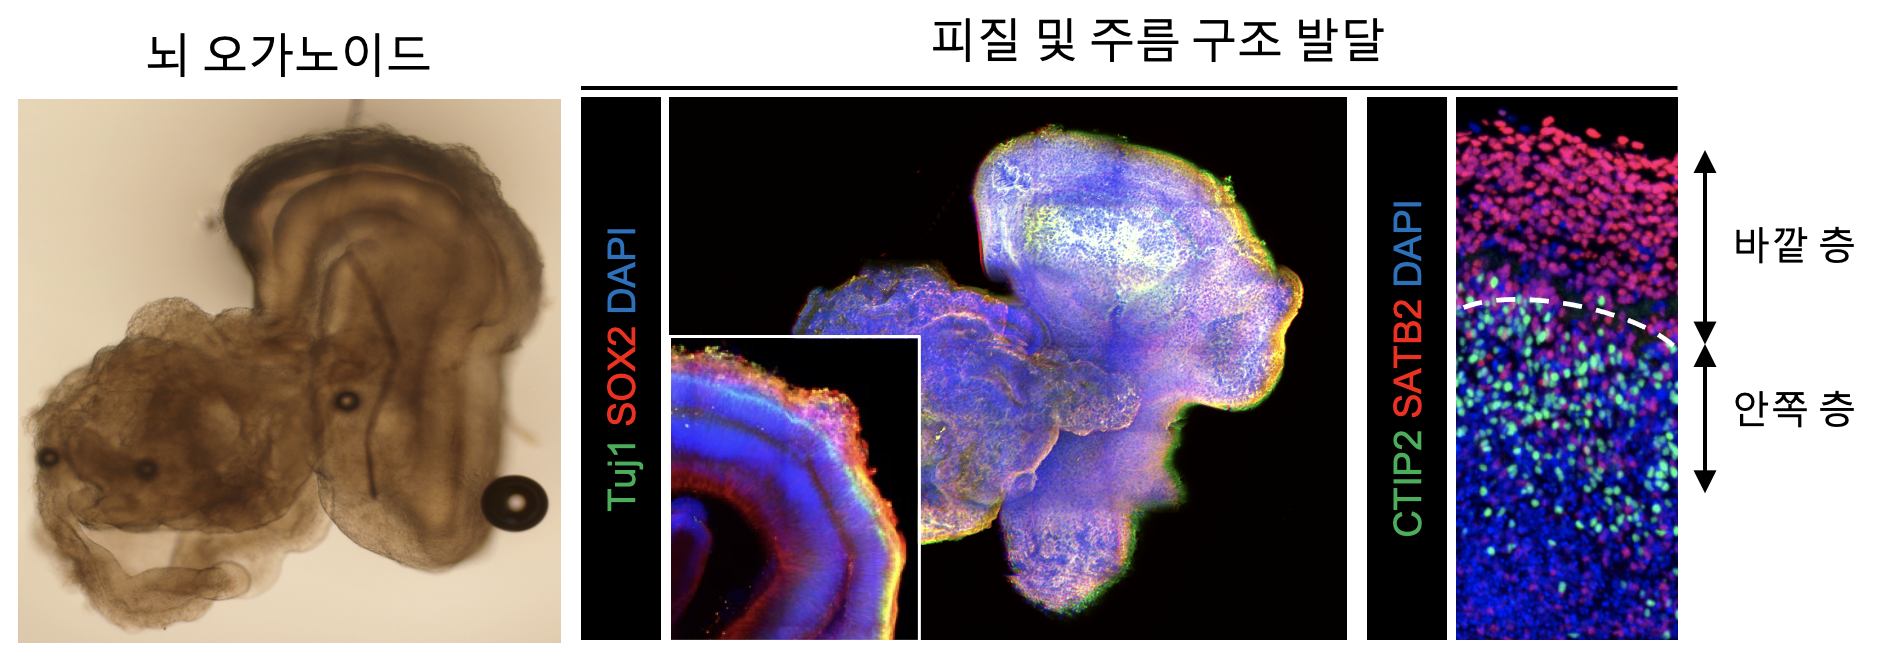 뇌 오가노이드의 피질 및 구조 발달을 확인하는 3차원 이미지 분석